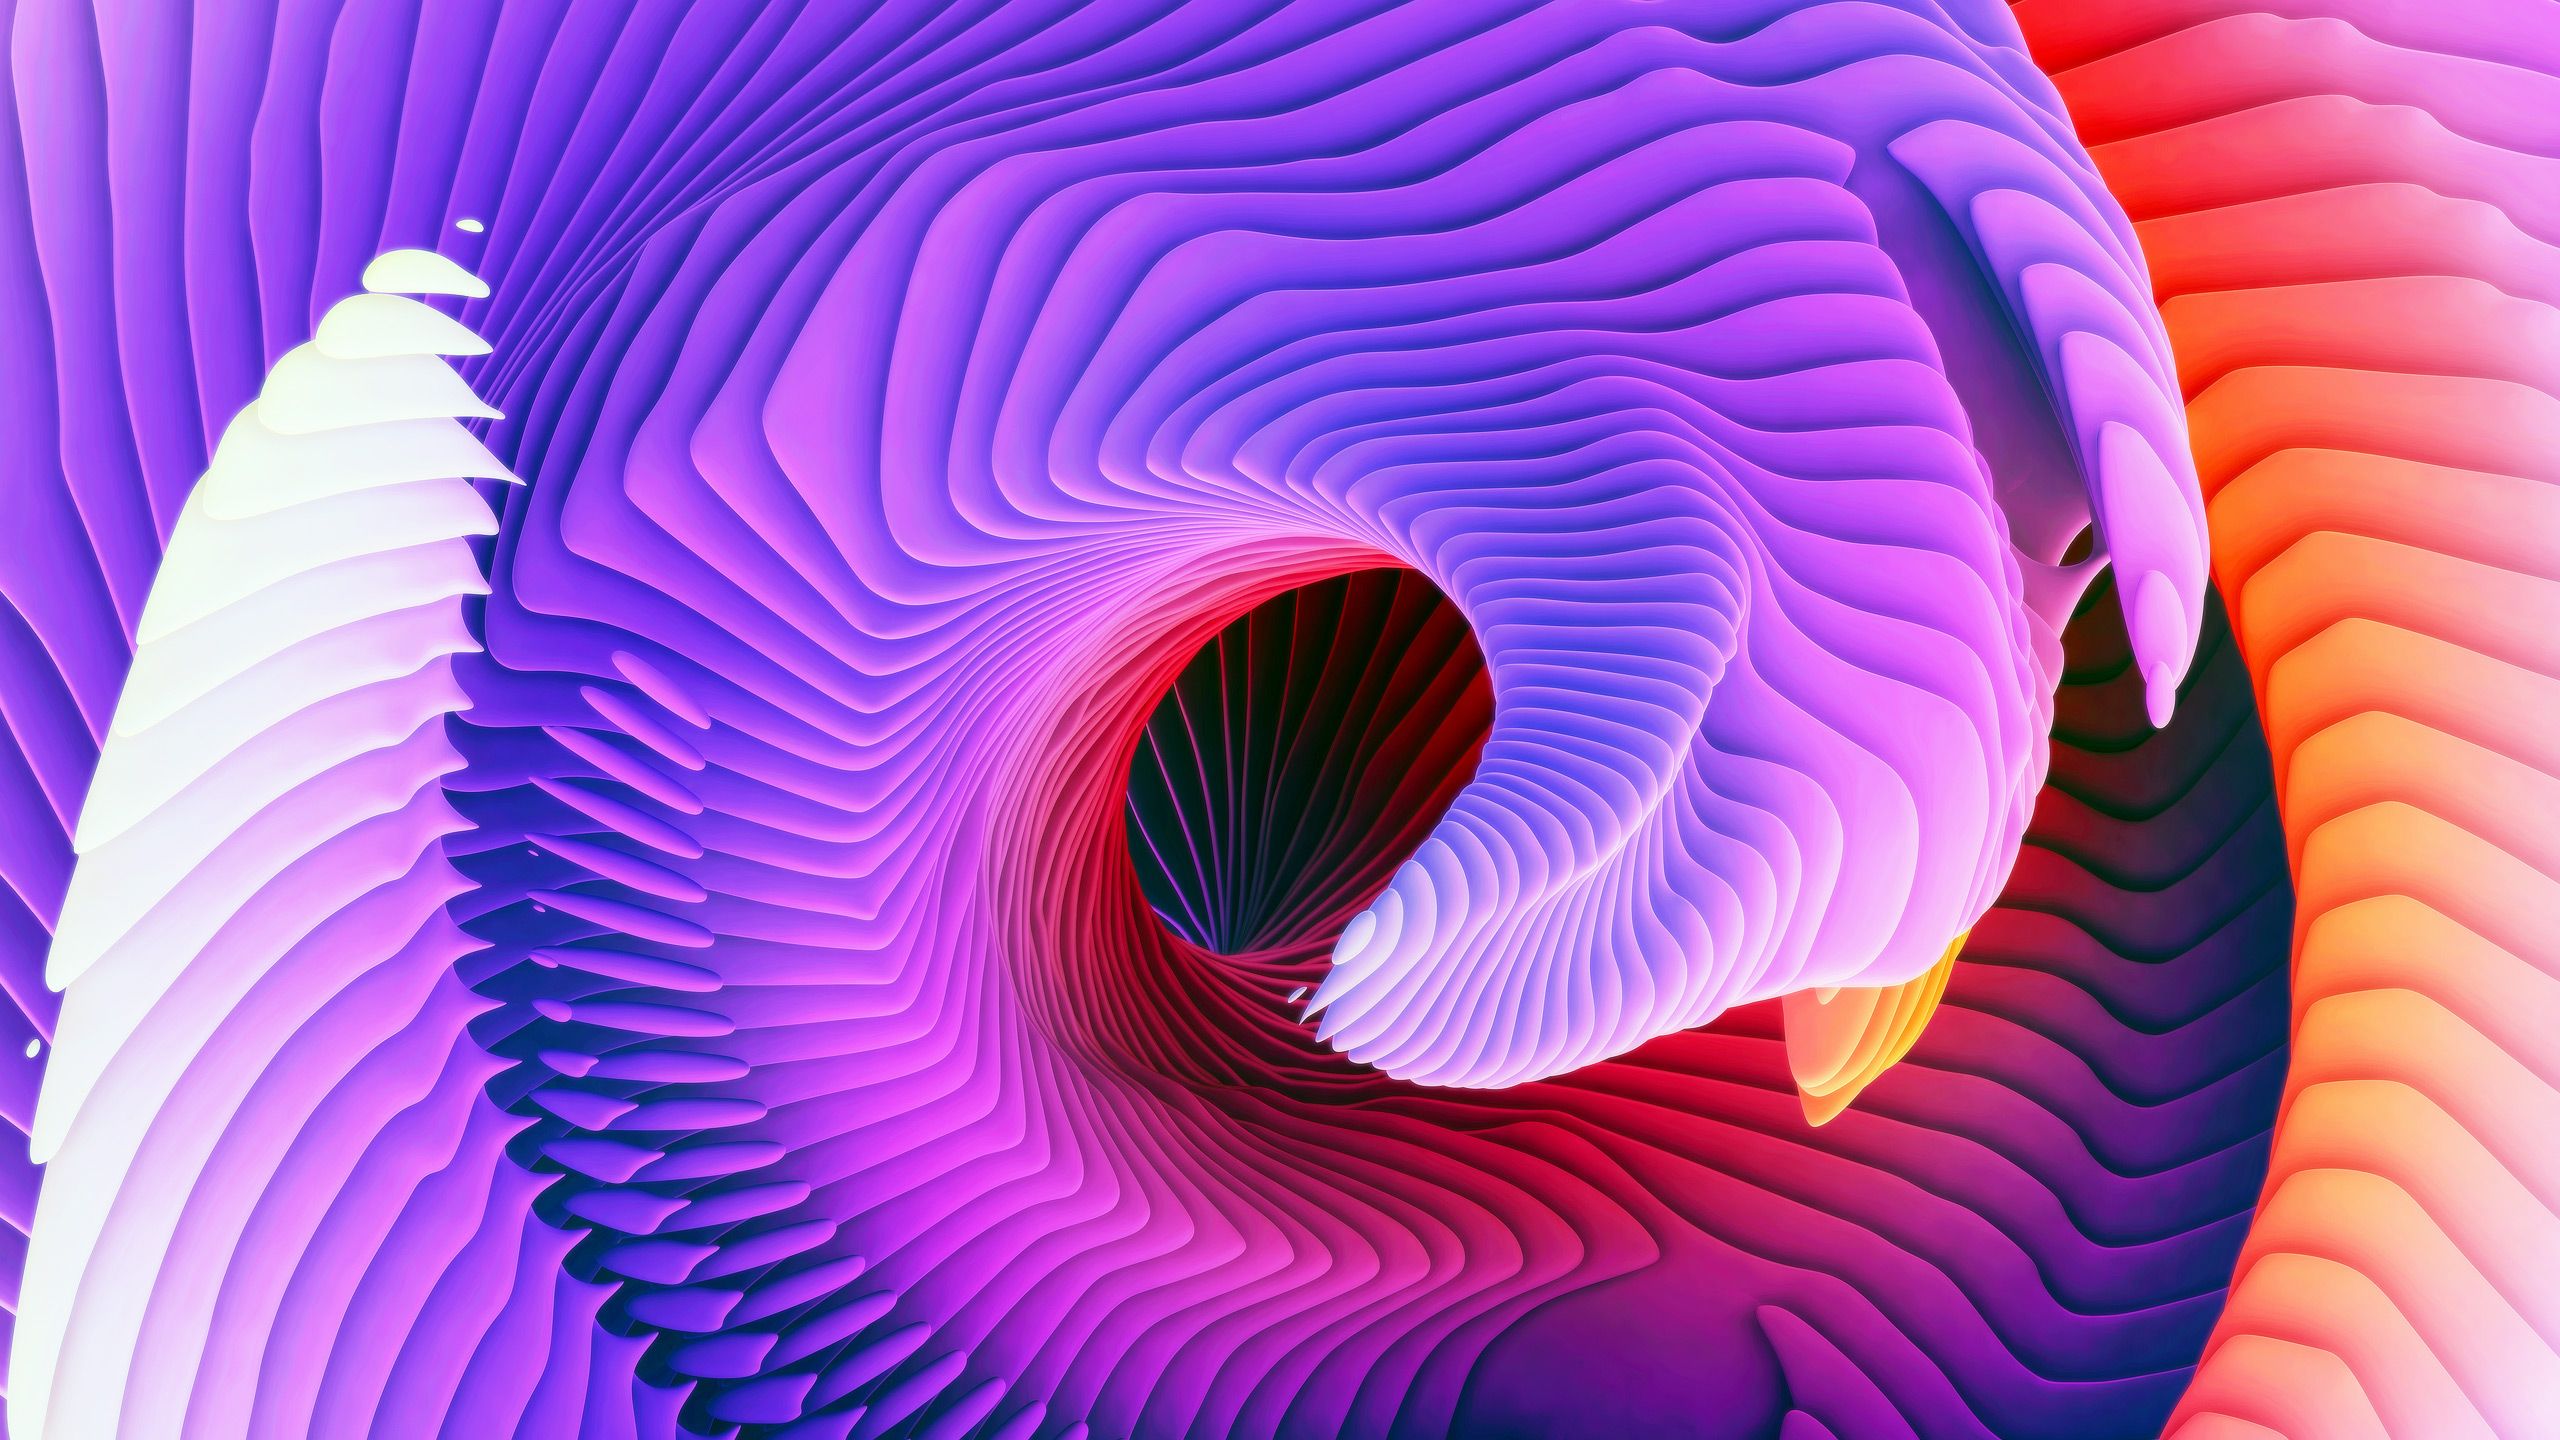 3D Spiral Wallpaper Free 3D Spiral Background